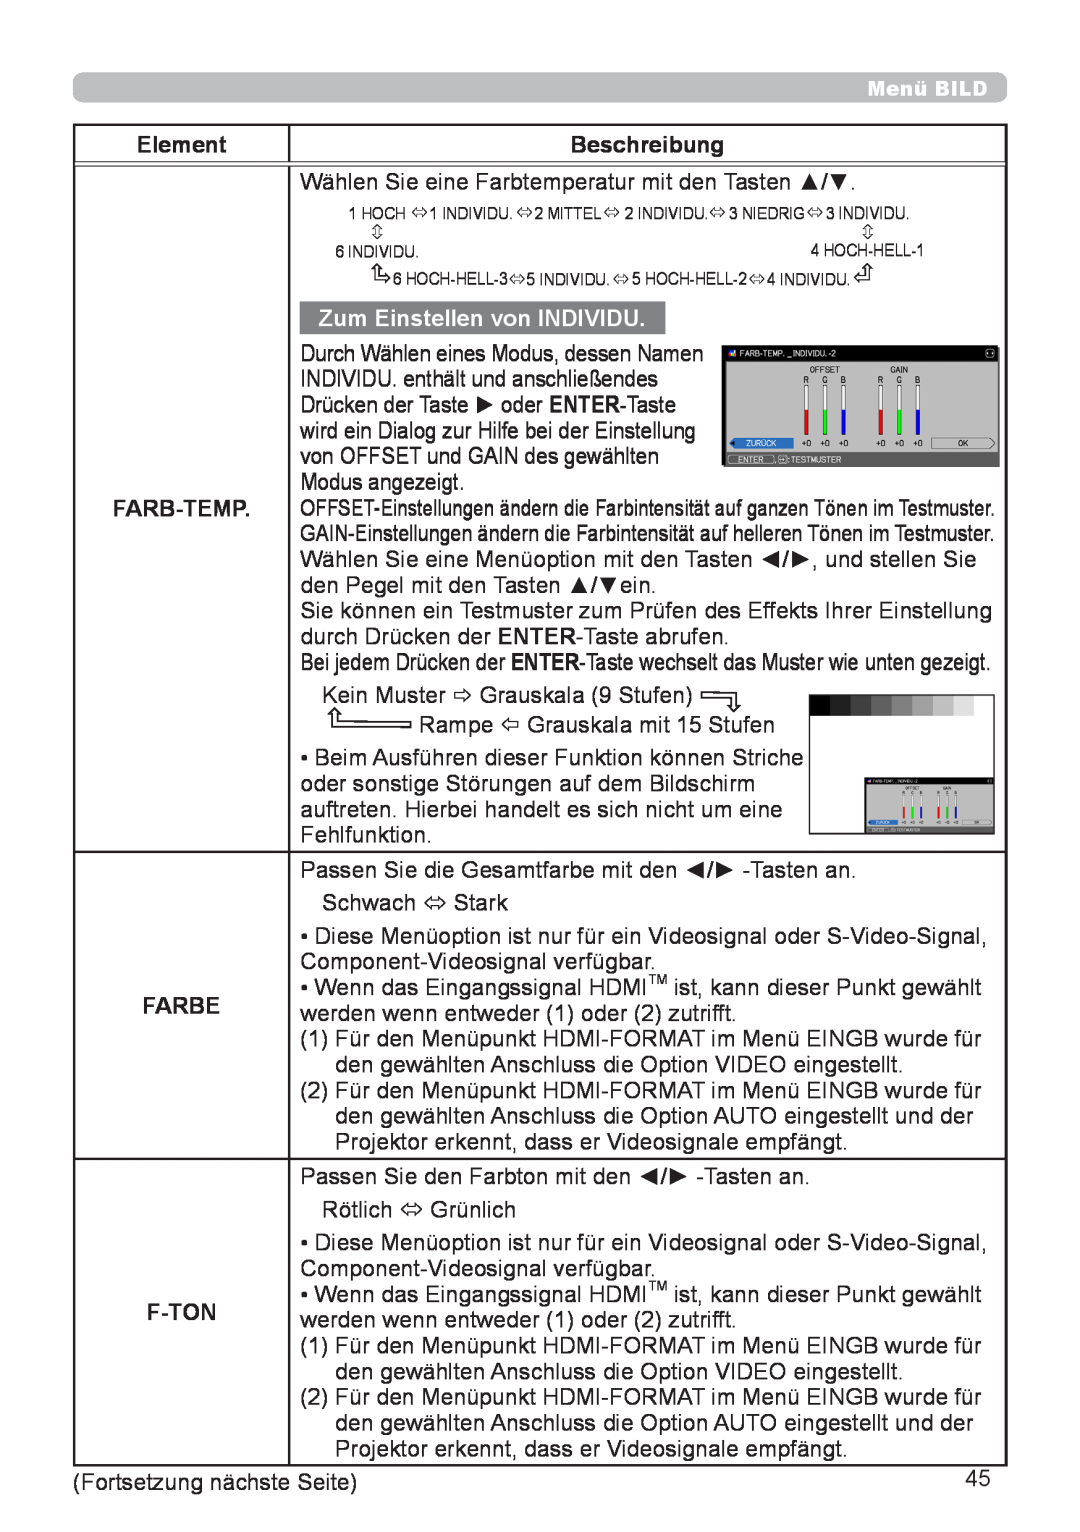 InFocus IN5132 user manual Element, Beschreibung, Zum Einstellen von INDIVIDU, Farb-Temp, Farbe, F-Ton 